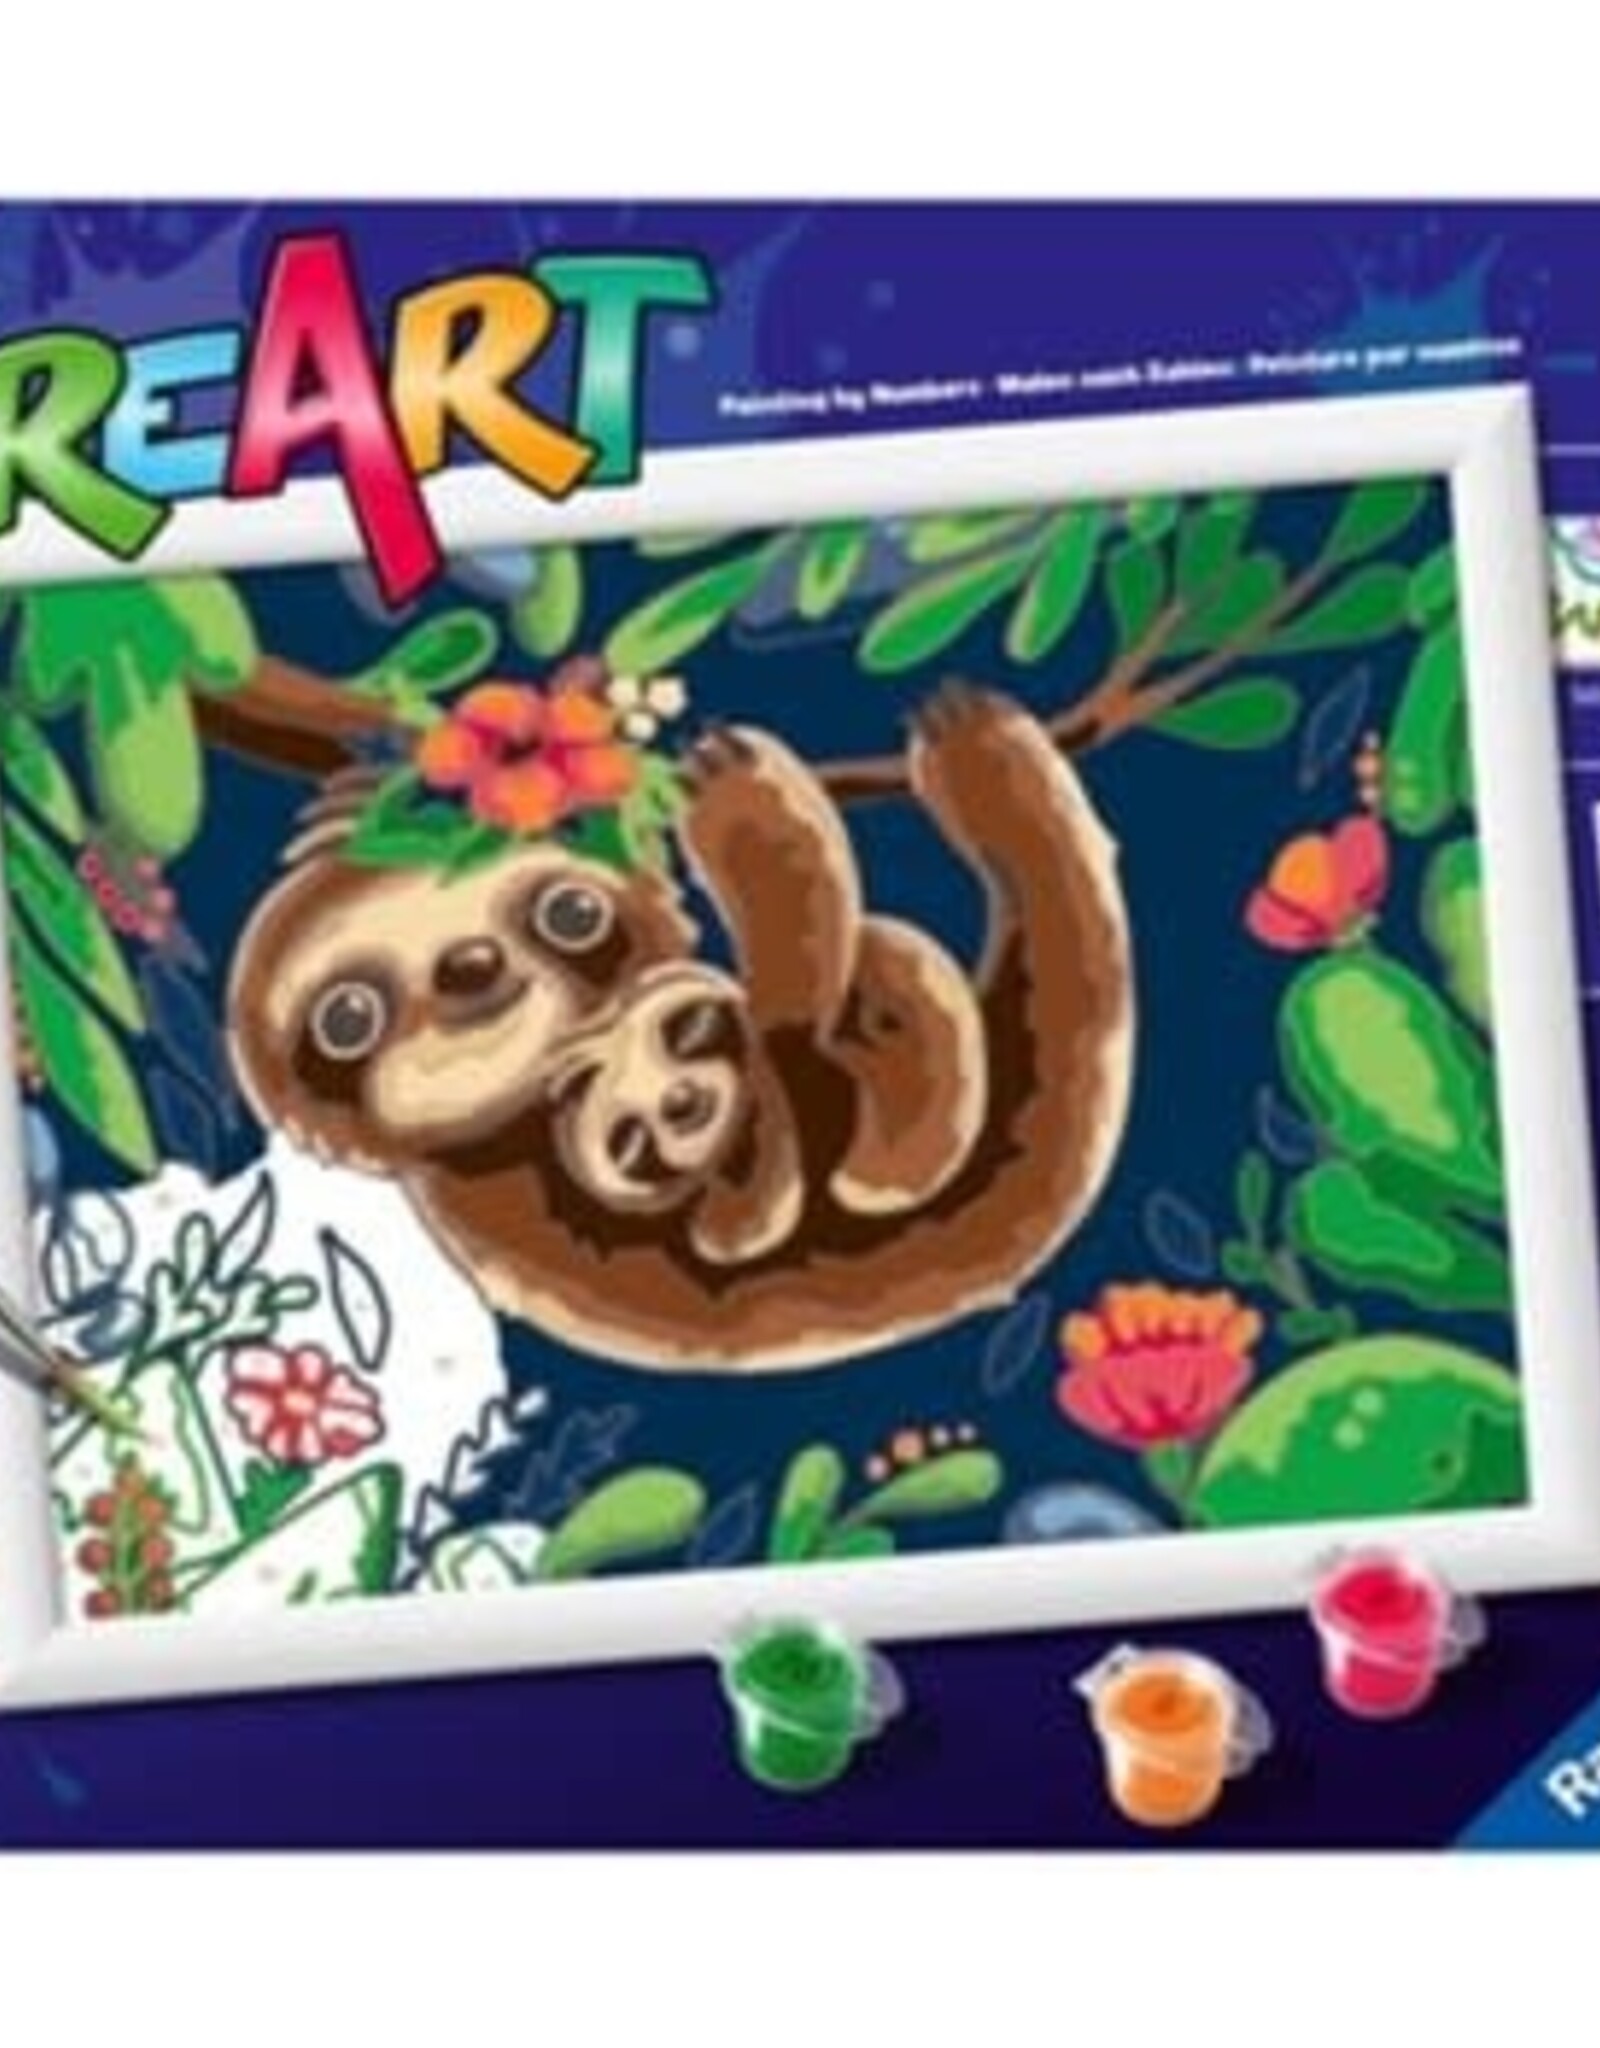 Ravensburger CreArt - Sweet Sloths 7x10